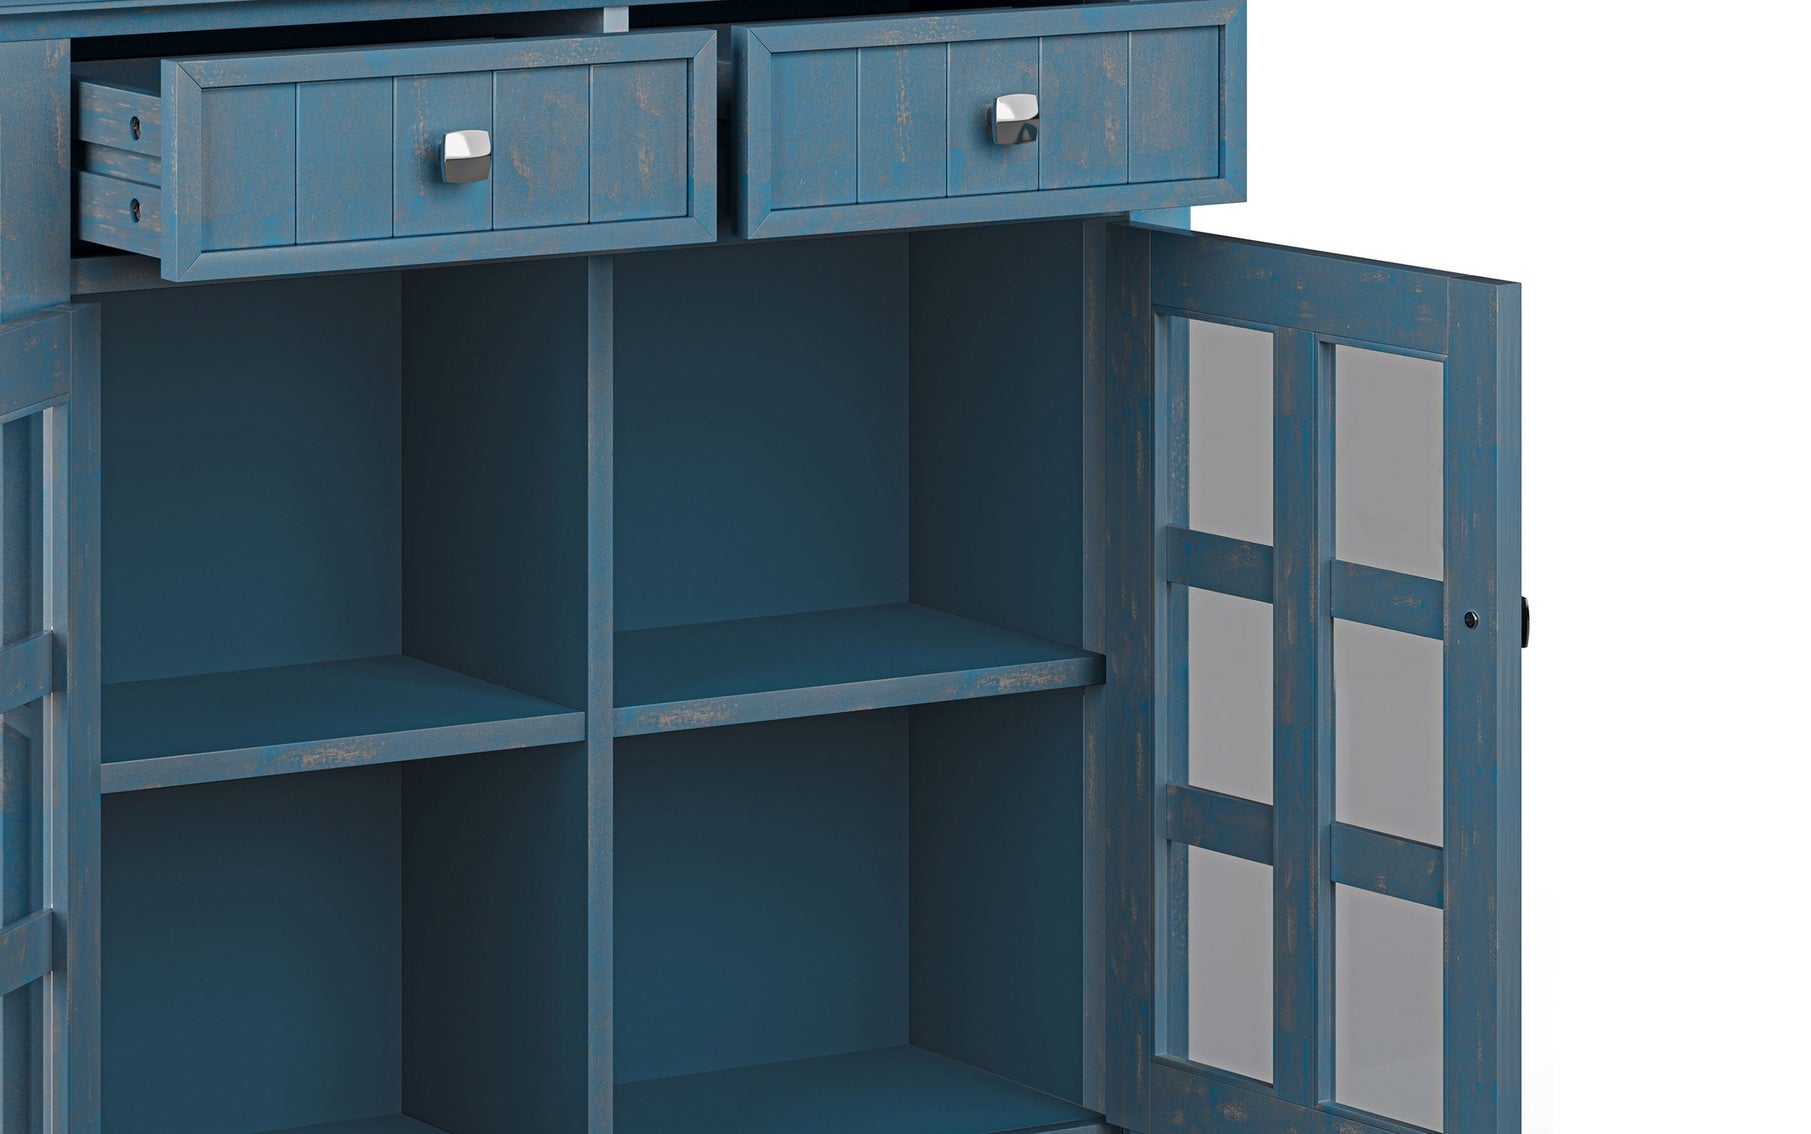 Distressed Coastal Blue | Acadian Entryway Storage Cabinet